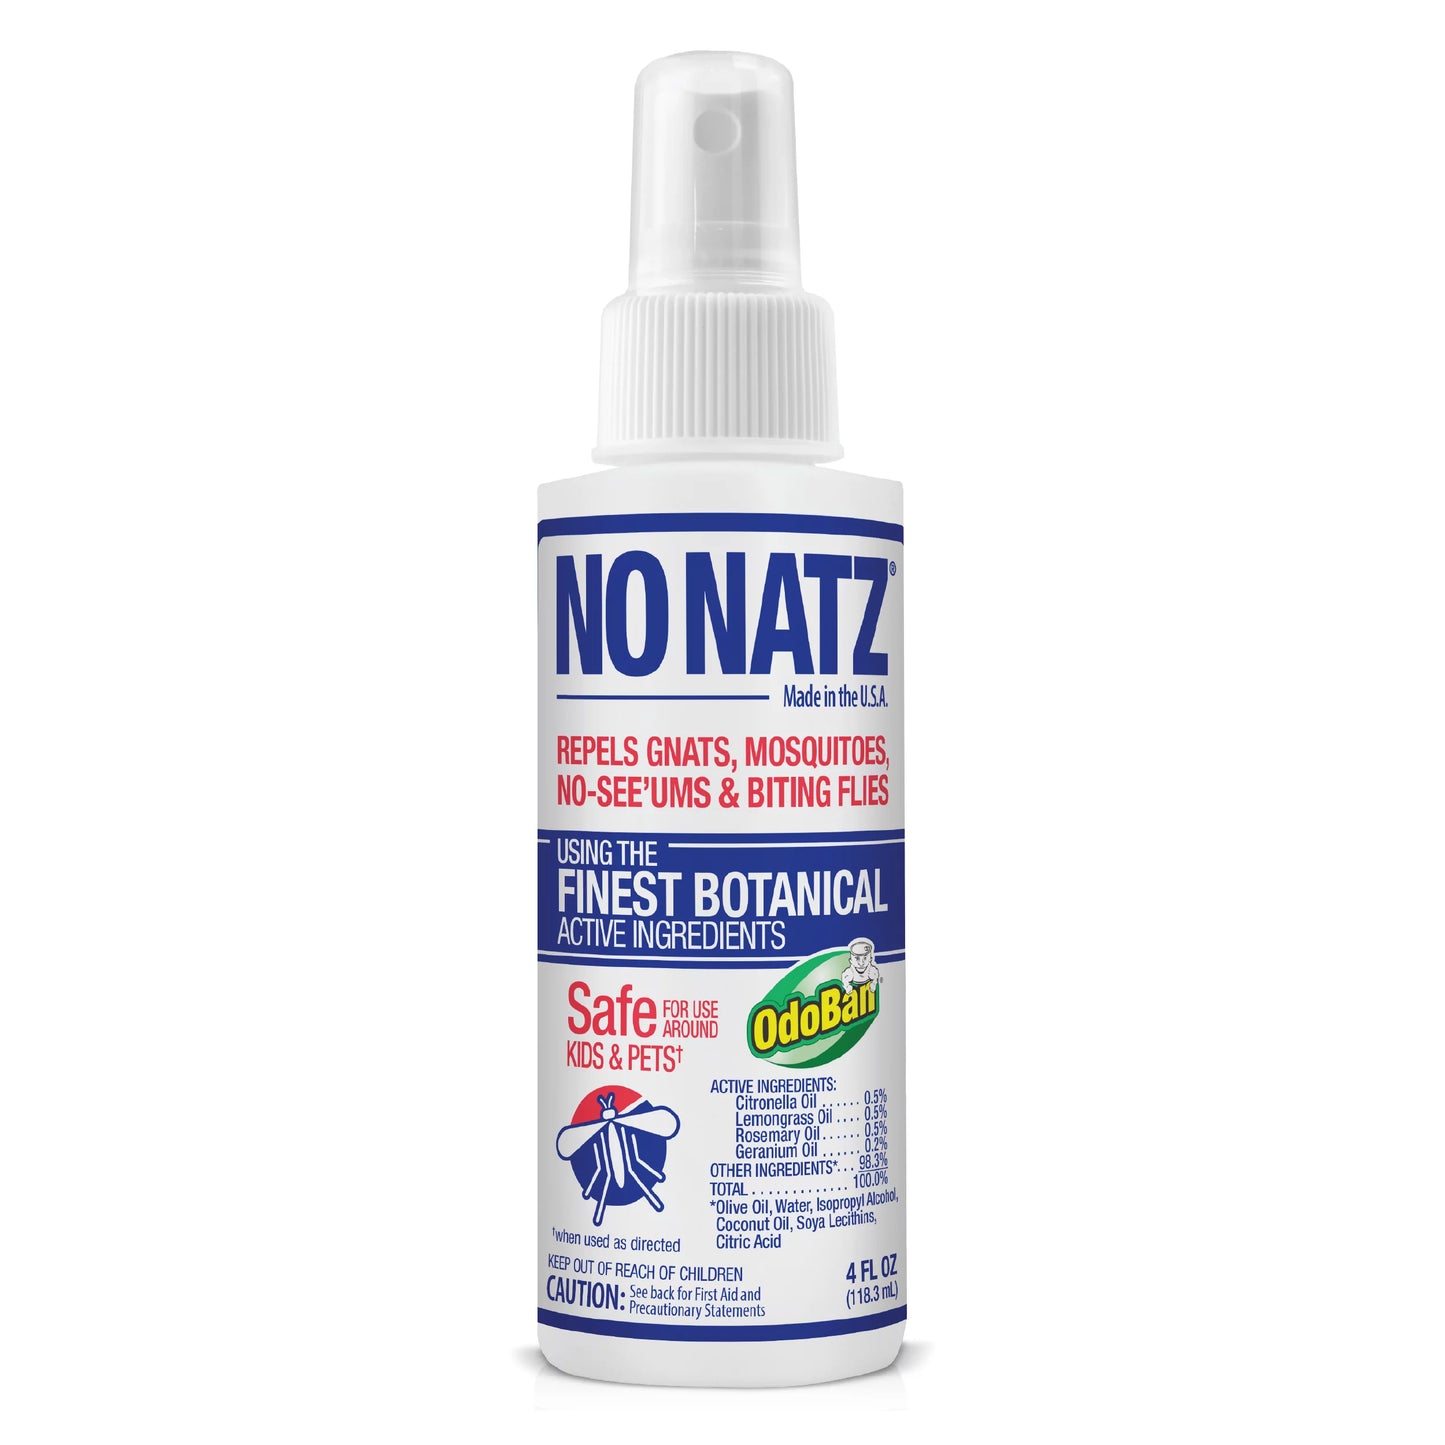 No Natz Spray